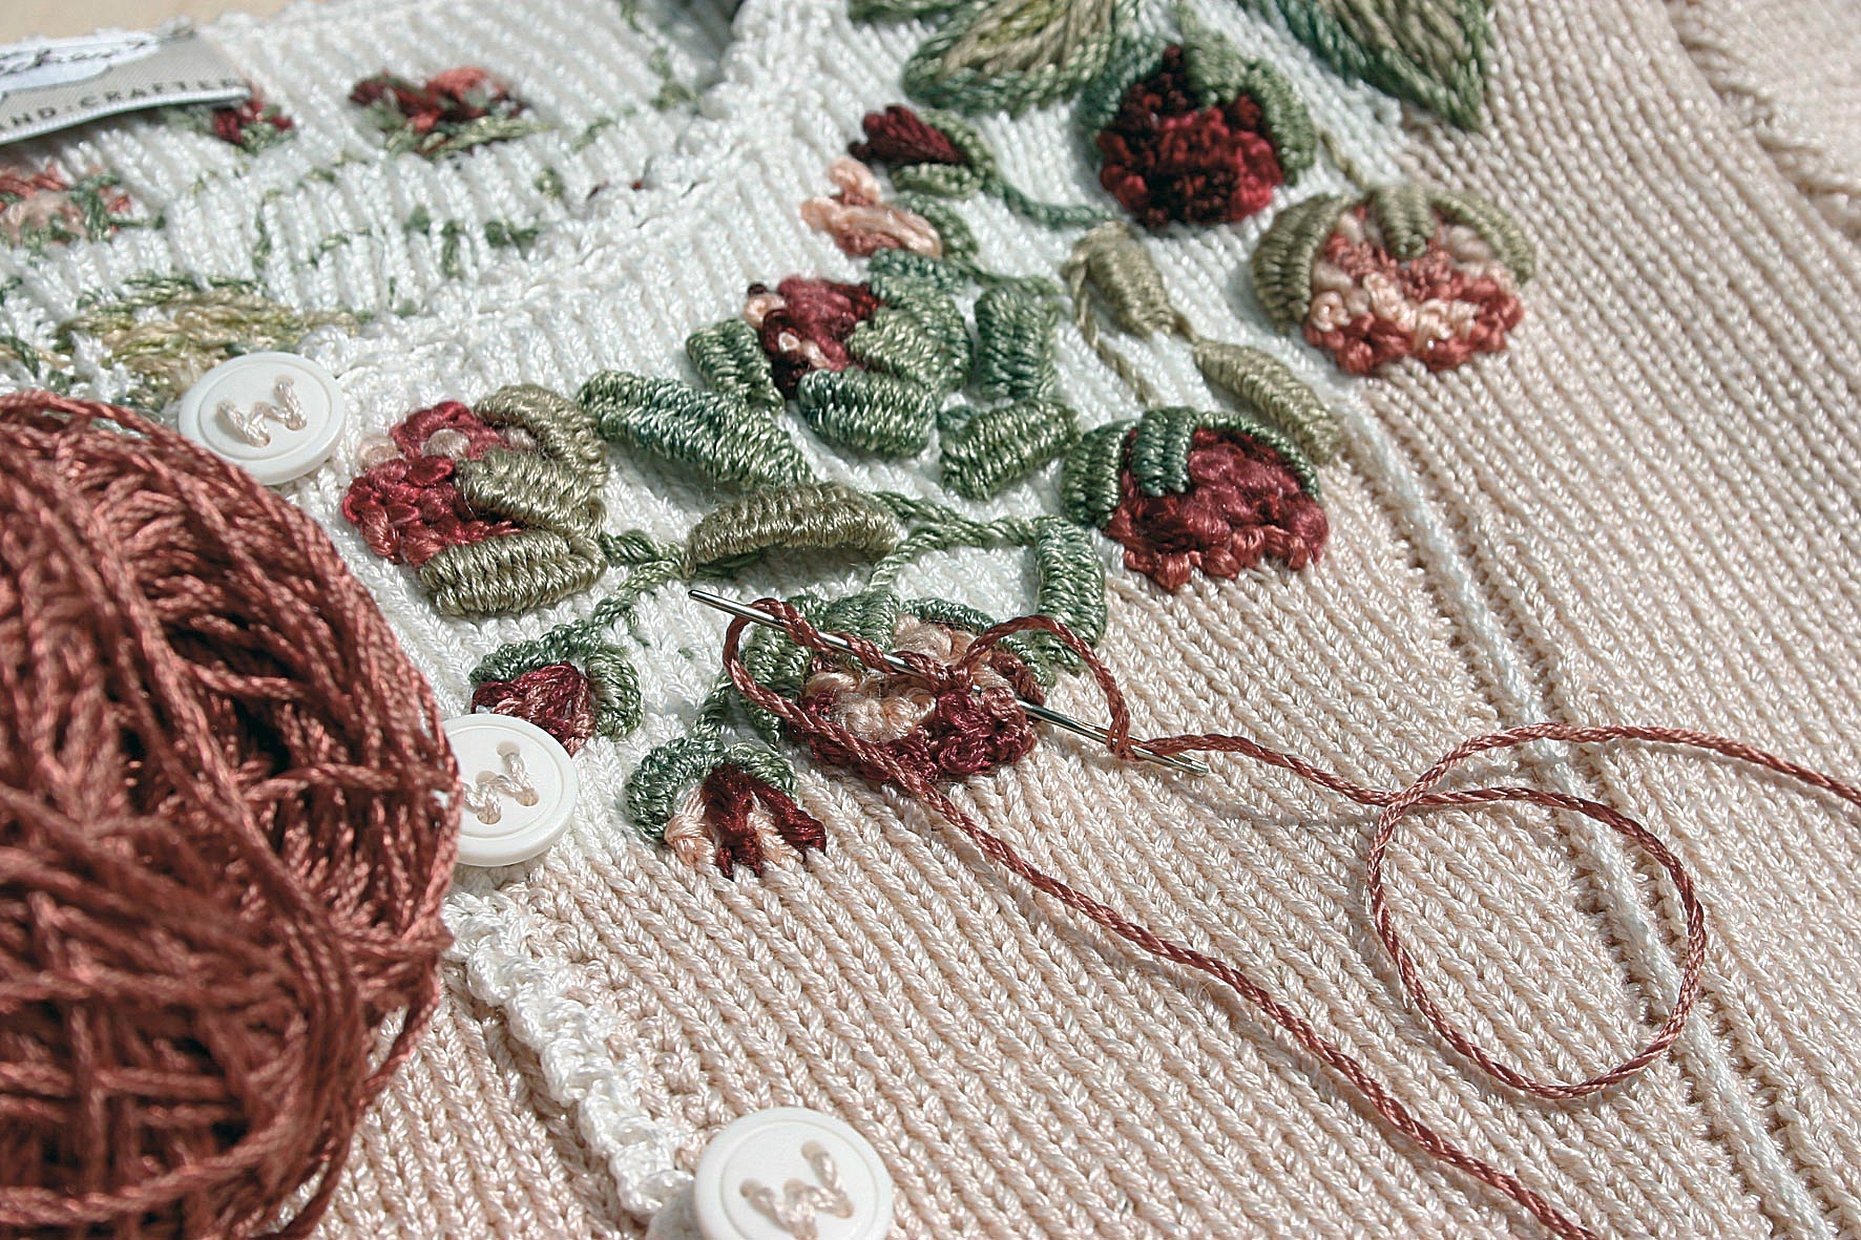 Вышивка по вязаному полотну рококо